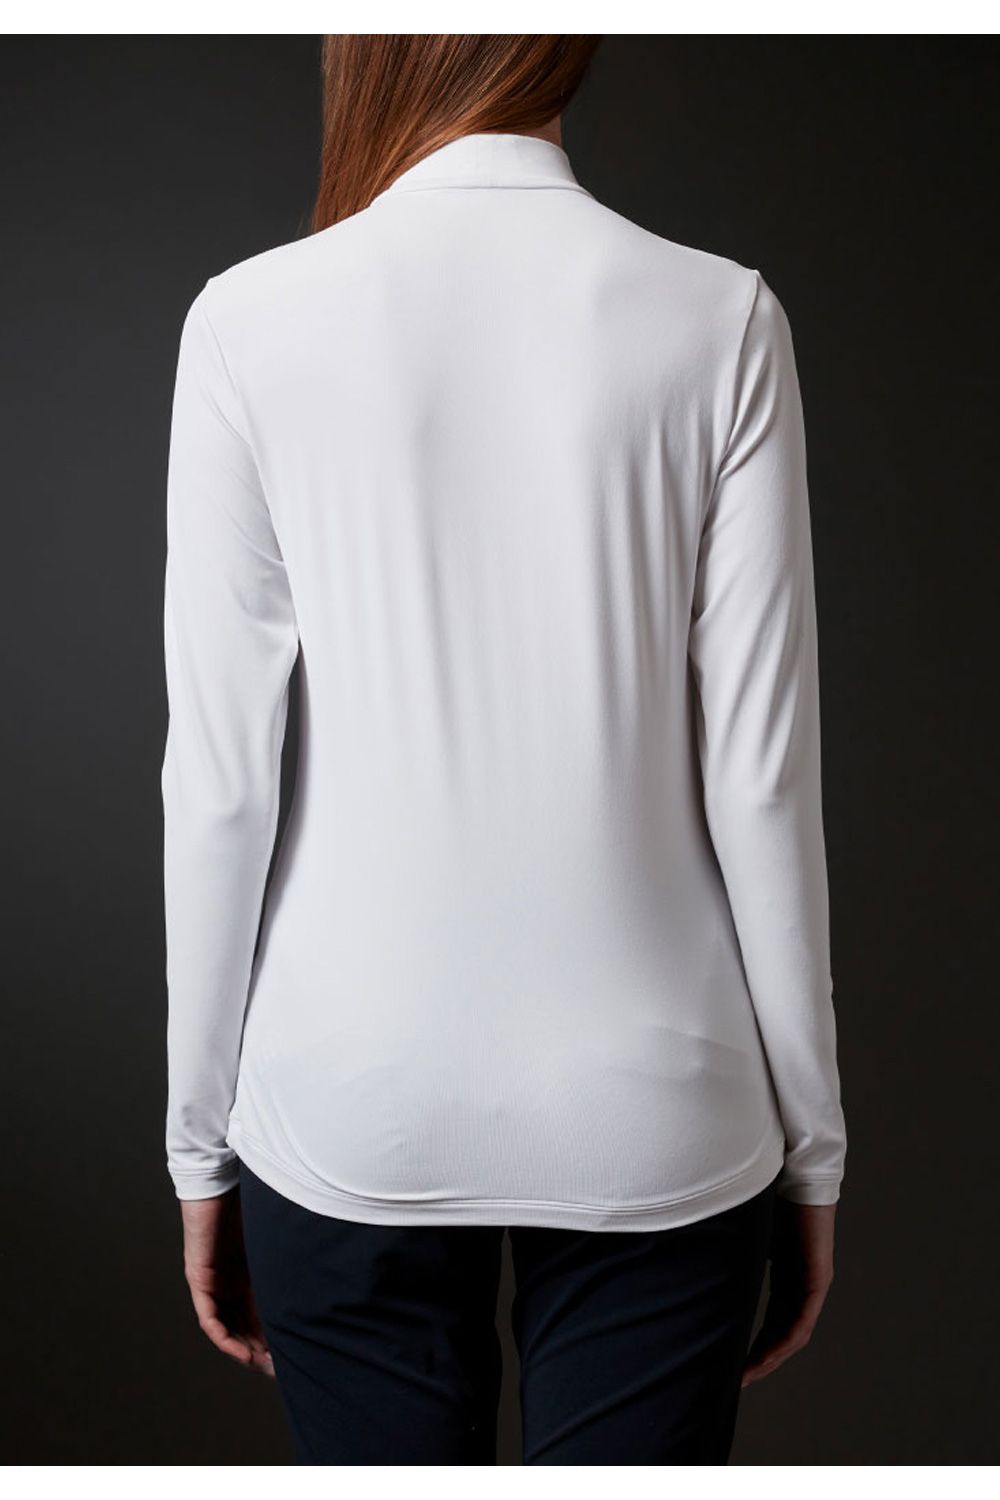 『LUXE COLLECTION』 神白モックネックシャツ(ブラカップ付) ホワイト レディース - S